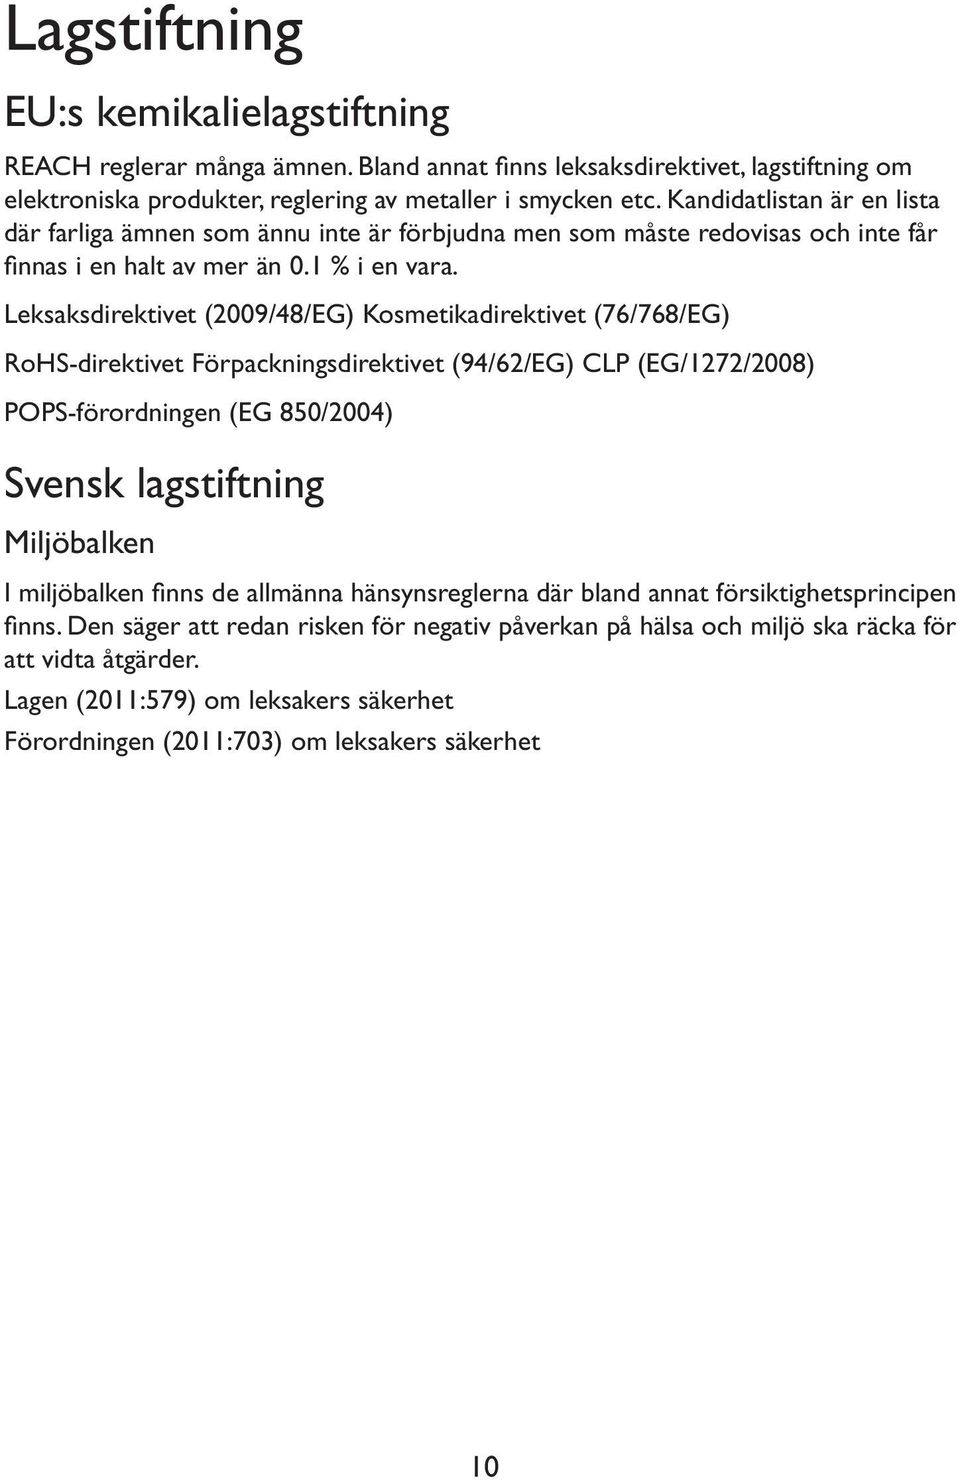 Leksaksdirektivet (2009/48/EG) Kosmetikadirektivet (76/768/EG) RoHS-direktivet Förpackningsdirektivet (94/62/EG) CLP (EG/1272/2008) POPS-förordningen (EG 850/2004) Svensk lagstiftning Miljöbalken I